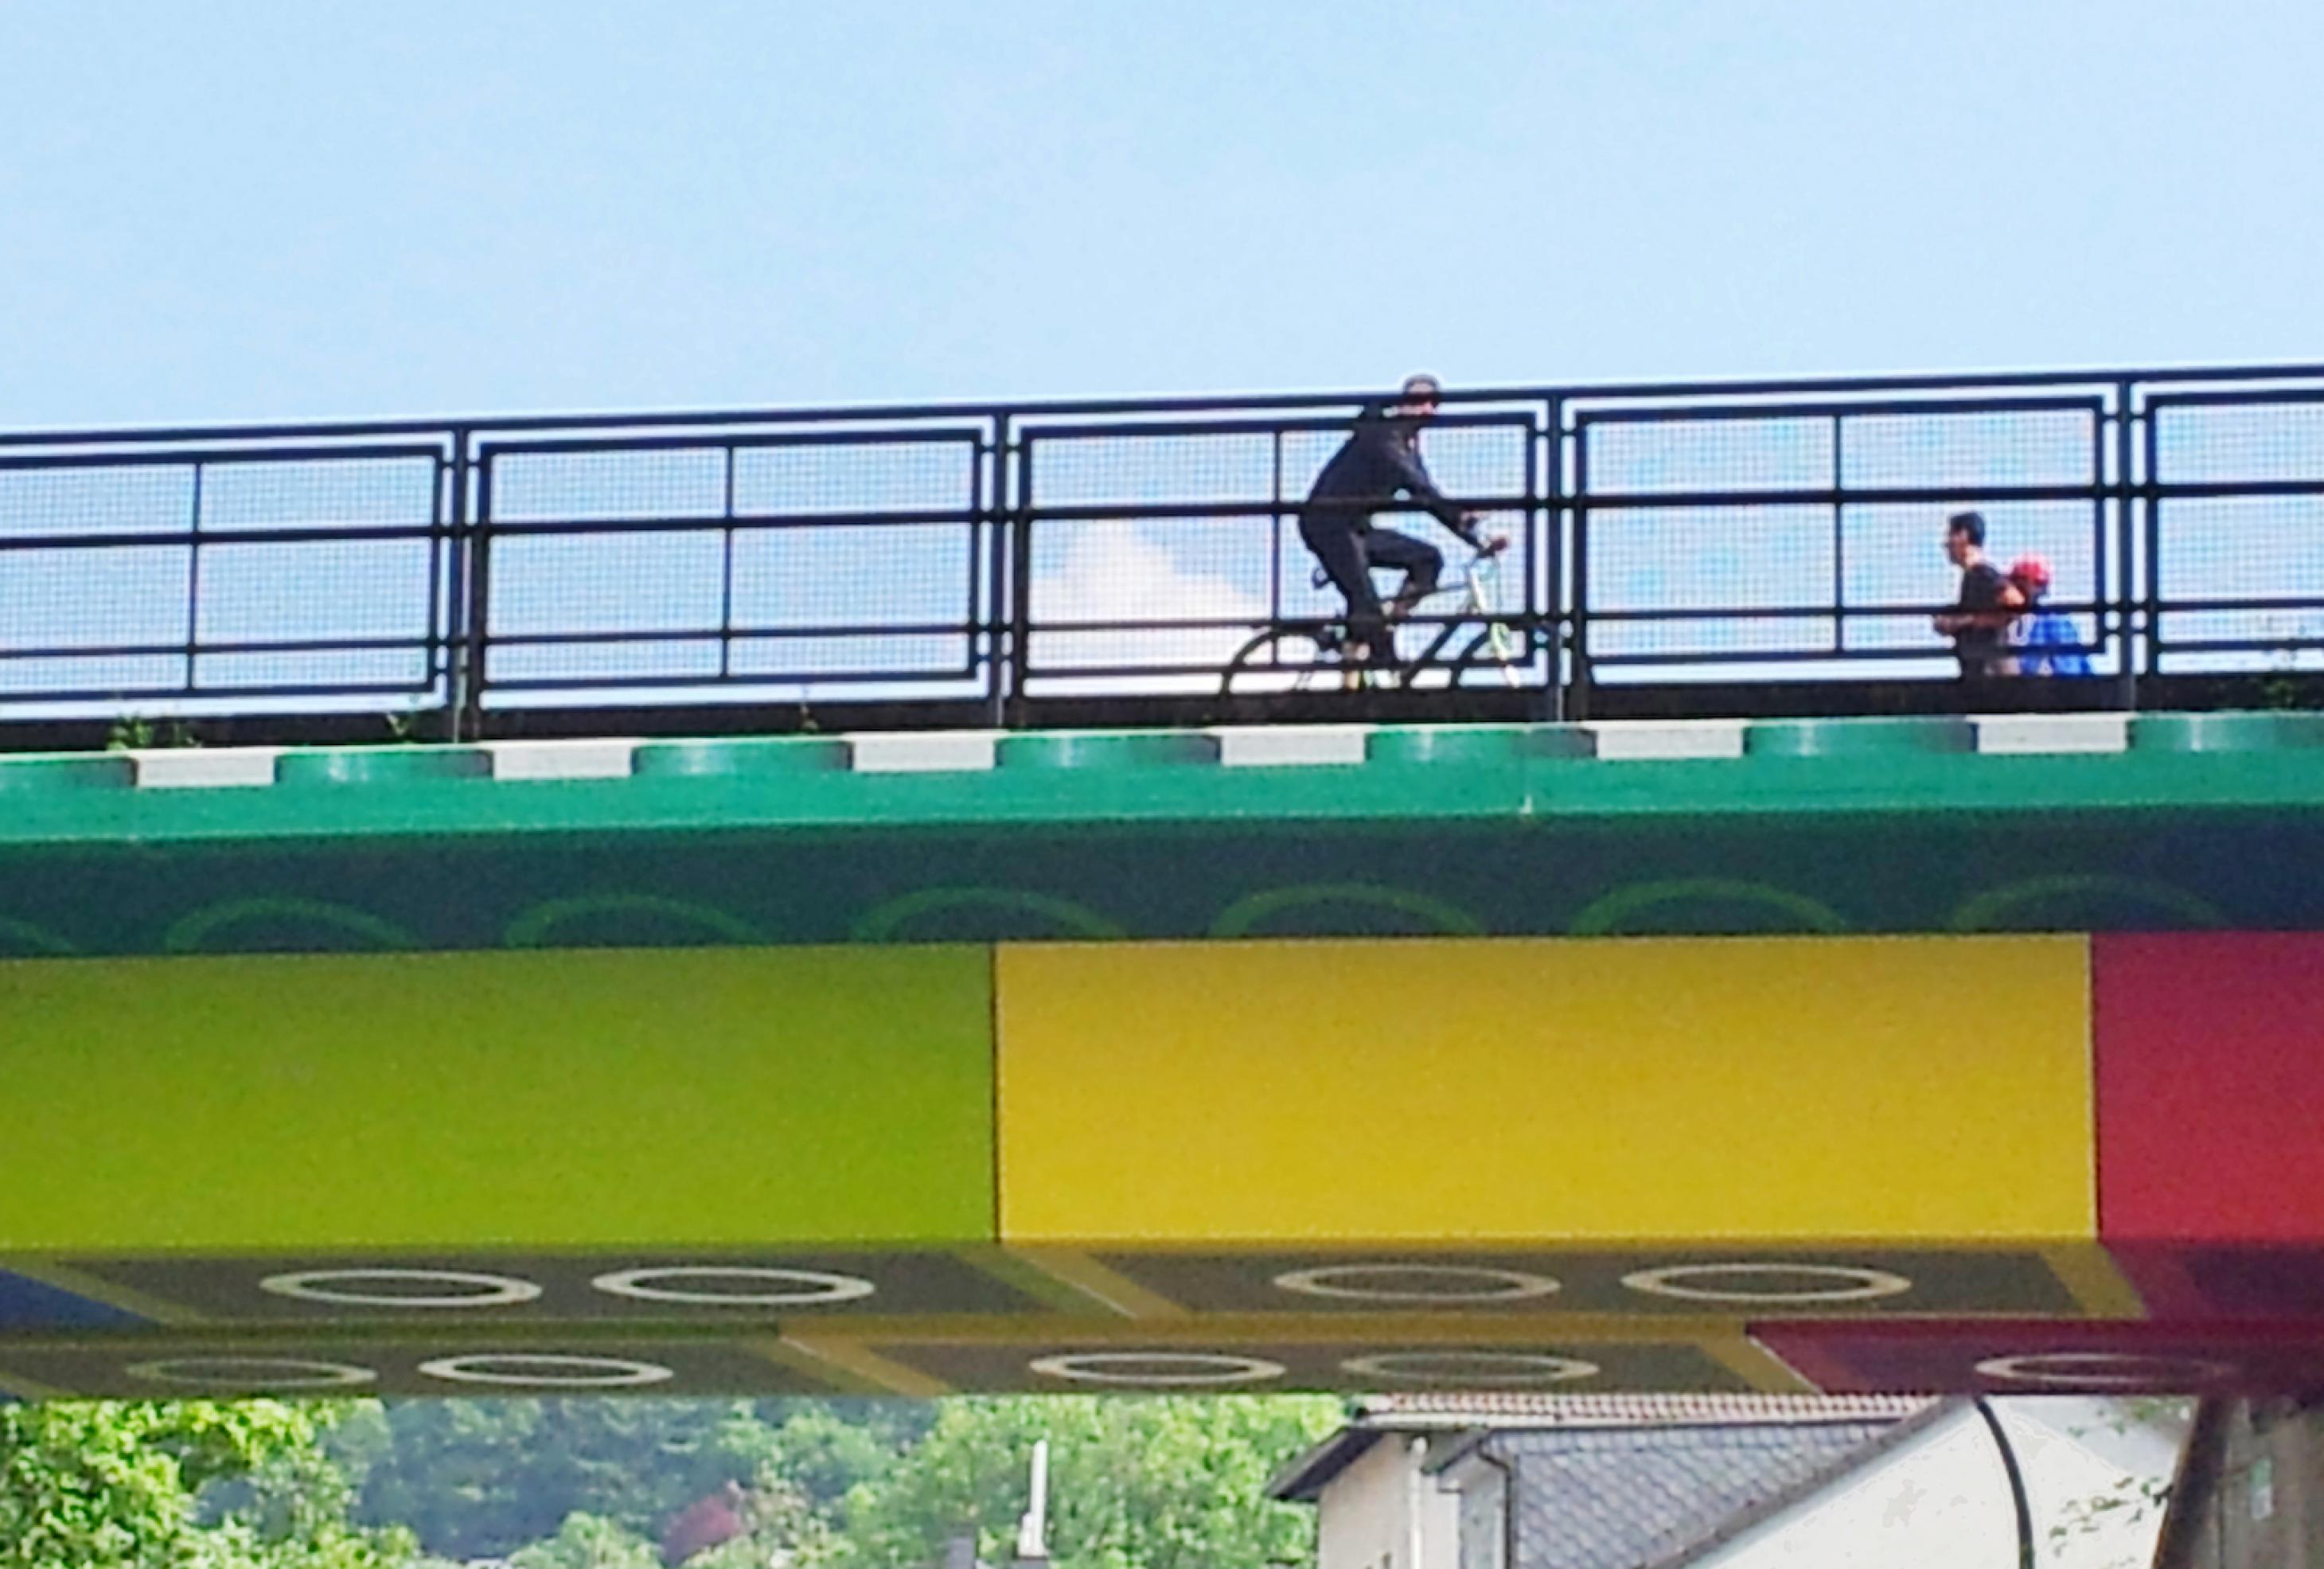 Ein Ausschnitt der Lego-Brücke, auf der ein Radfahrer und zwei Fußgänger hinter dem Geländer zu sehen sind. Der Himmel ist blau.